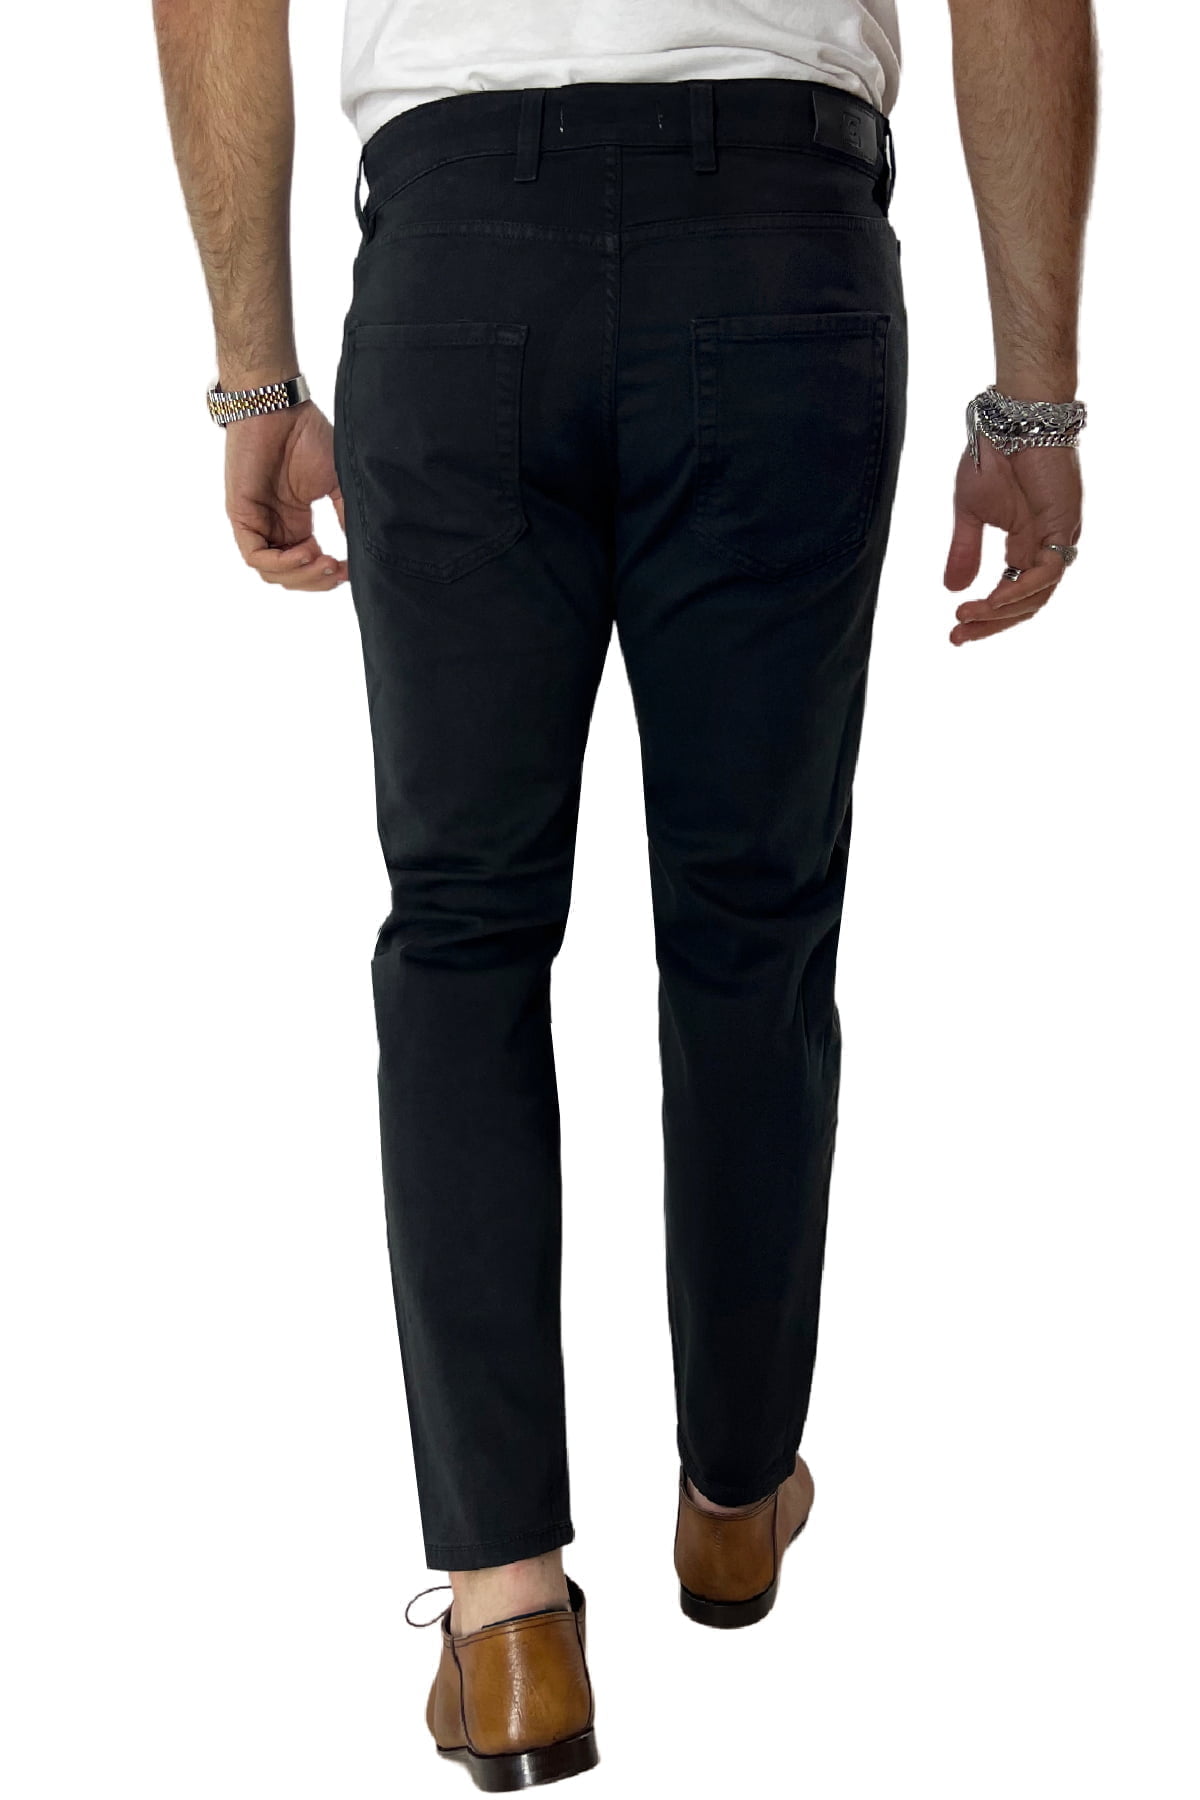 Jeans uomo nero tinta unita modello 5 tasche slim fit estivo made in italy